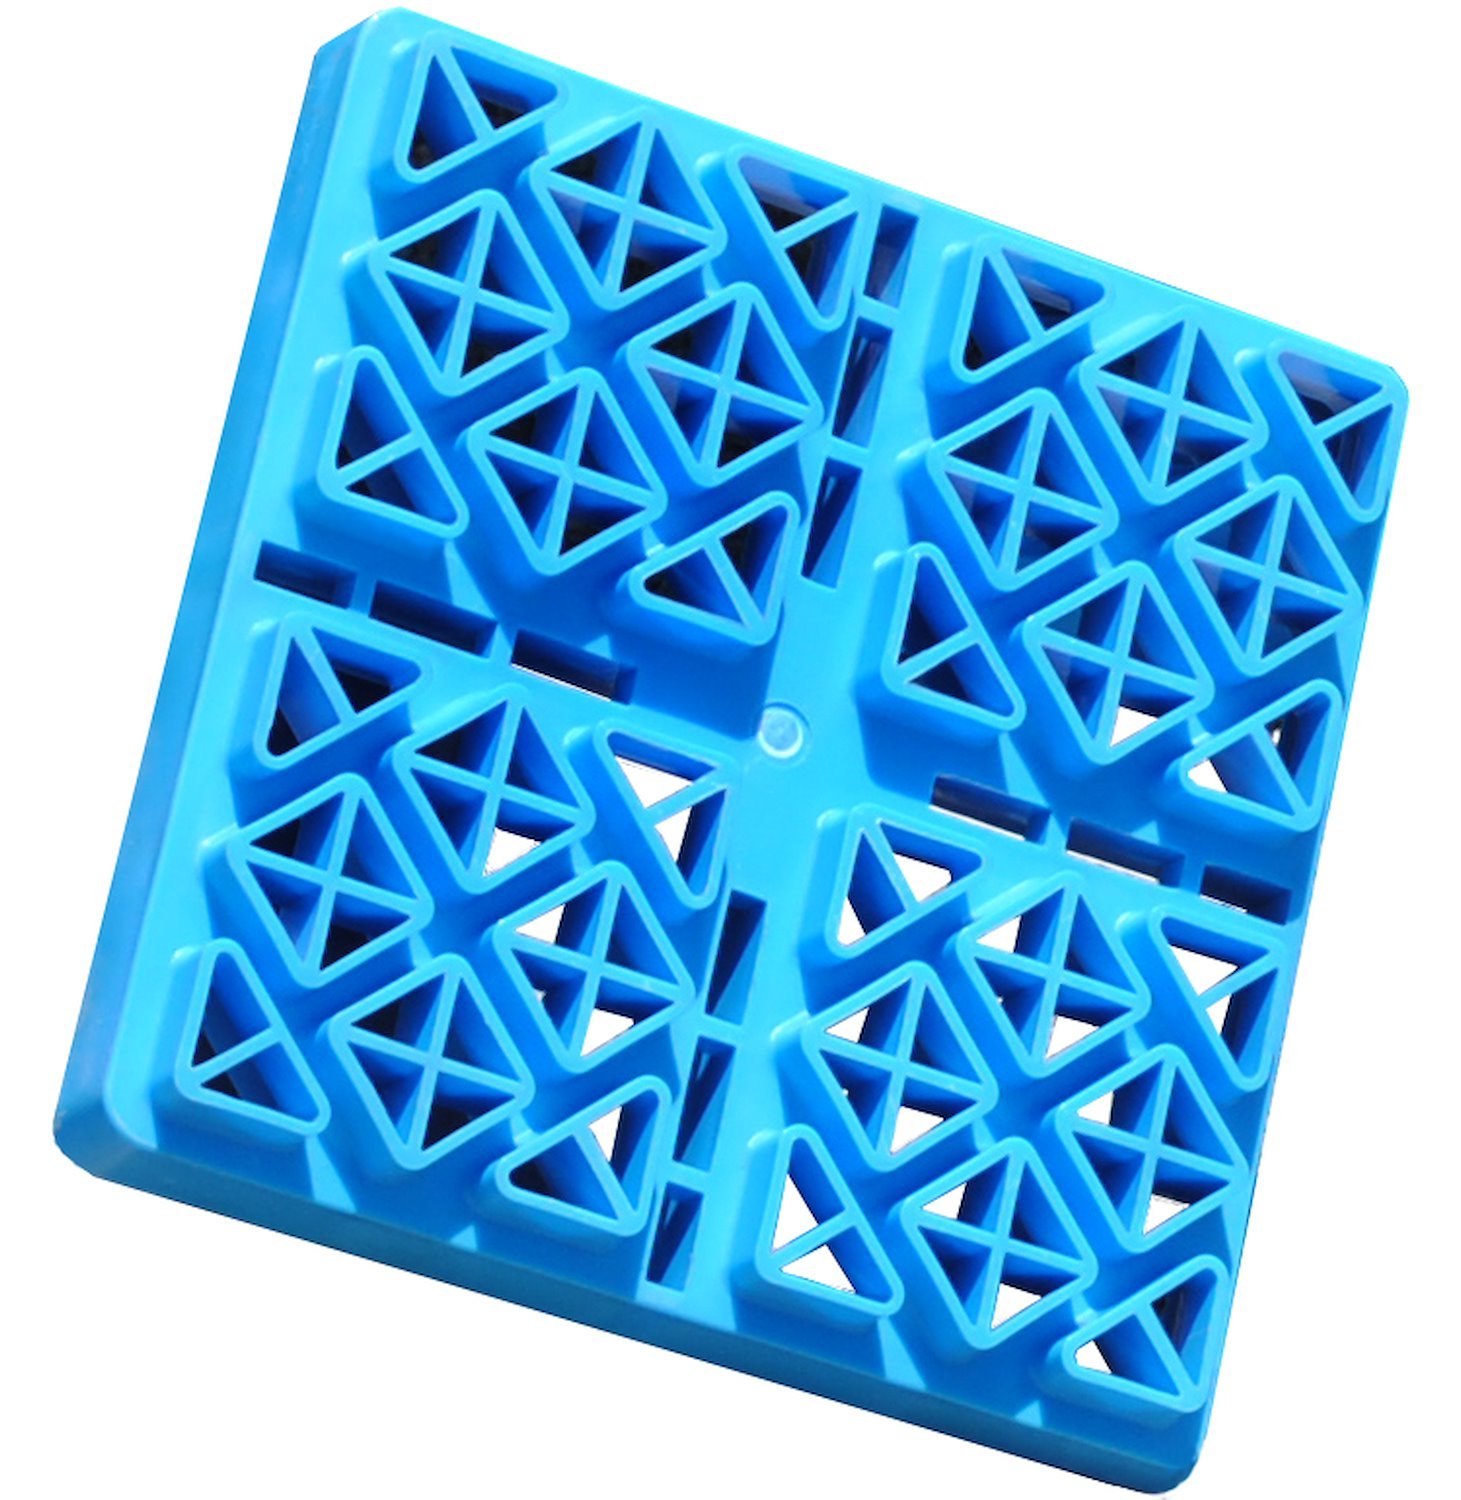 48-979051 Leveling Blocks - Set of 10